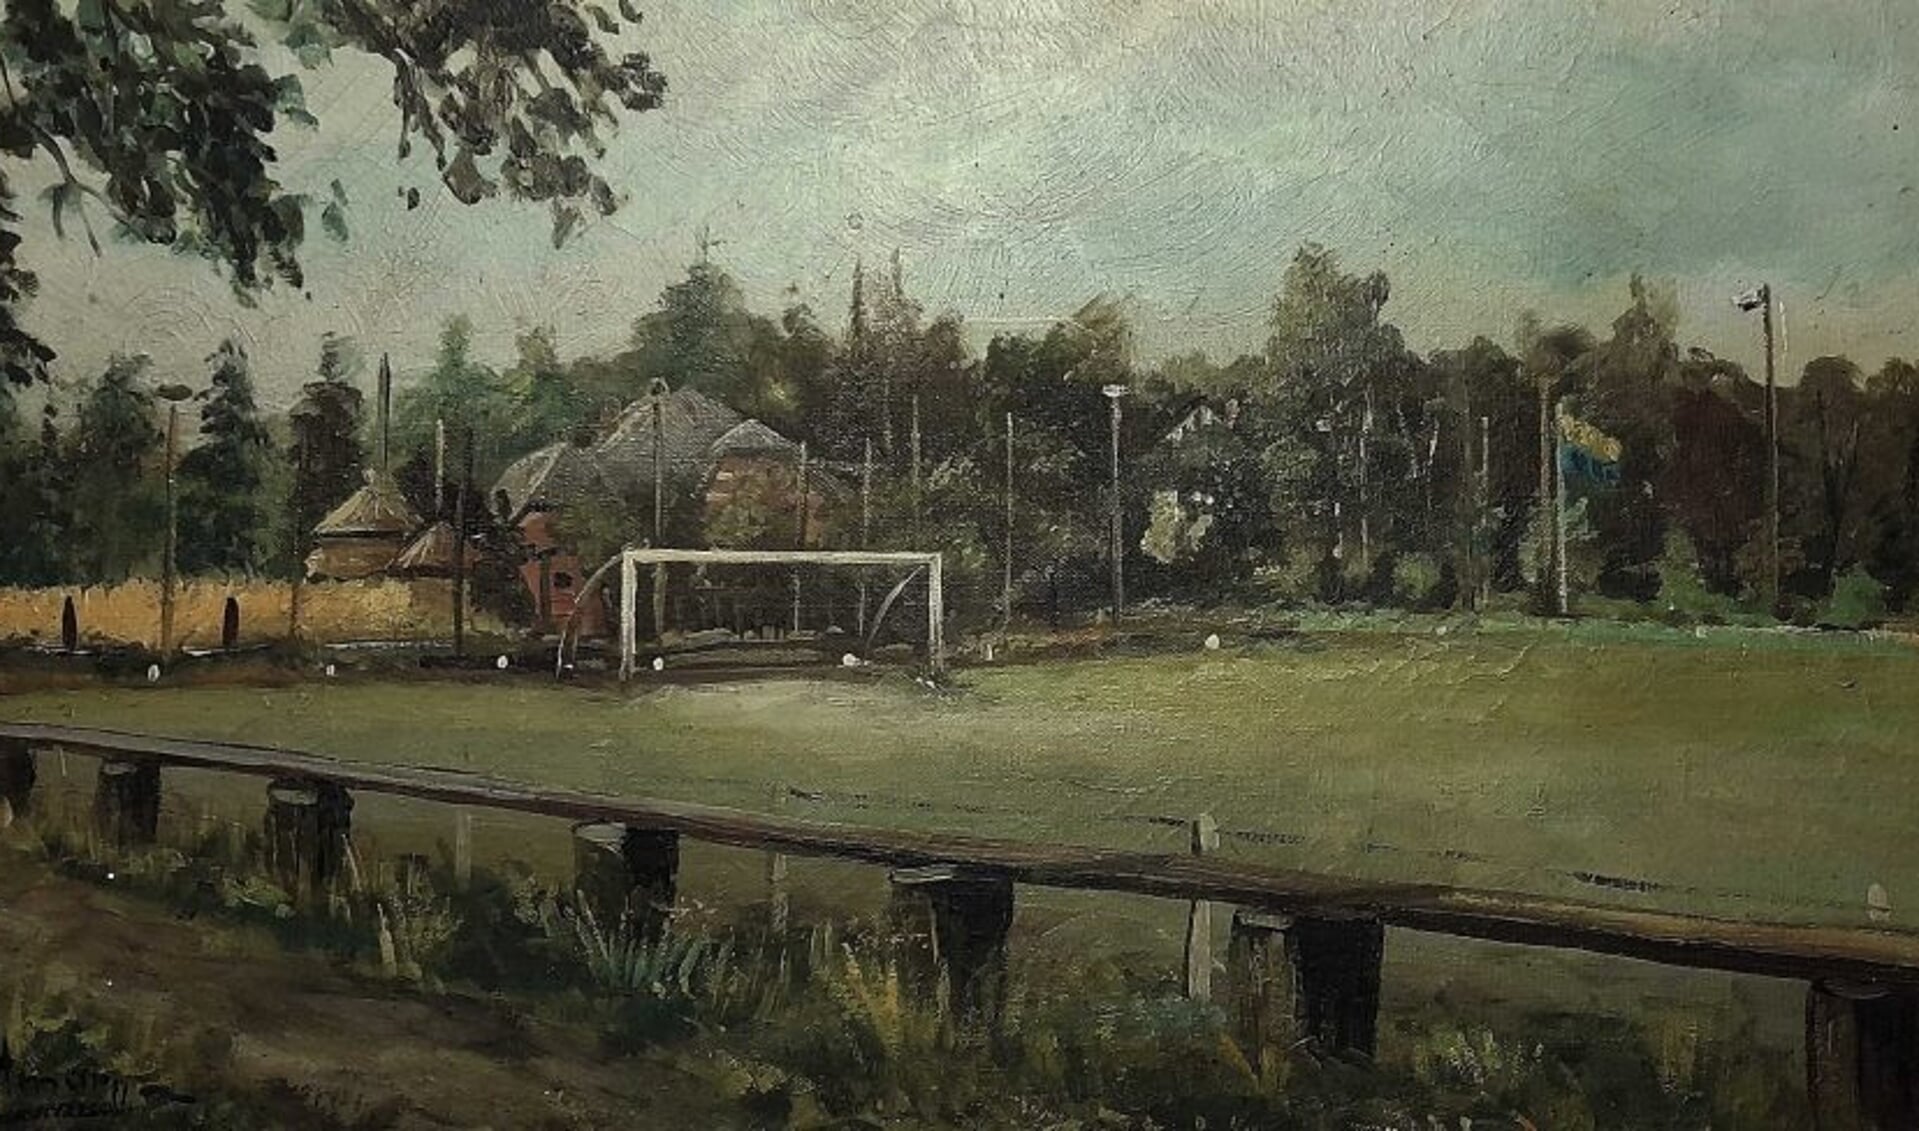 Het voetbalveld van KDC uit Lochem in 1949, geschilderd door Hennie van Oortmarssen. Afbeelding via Dick Lammertink